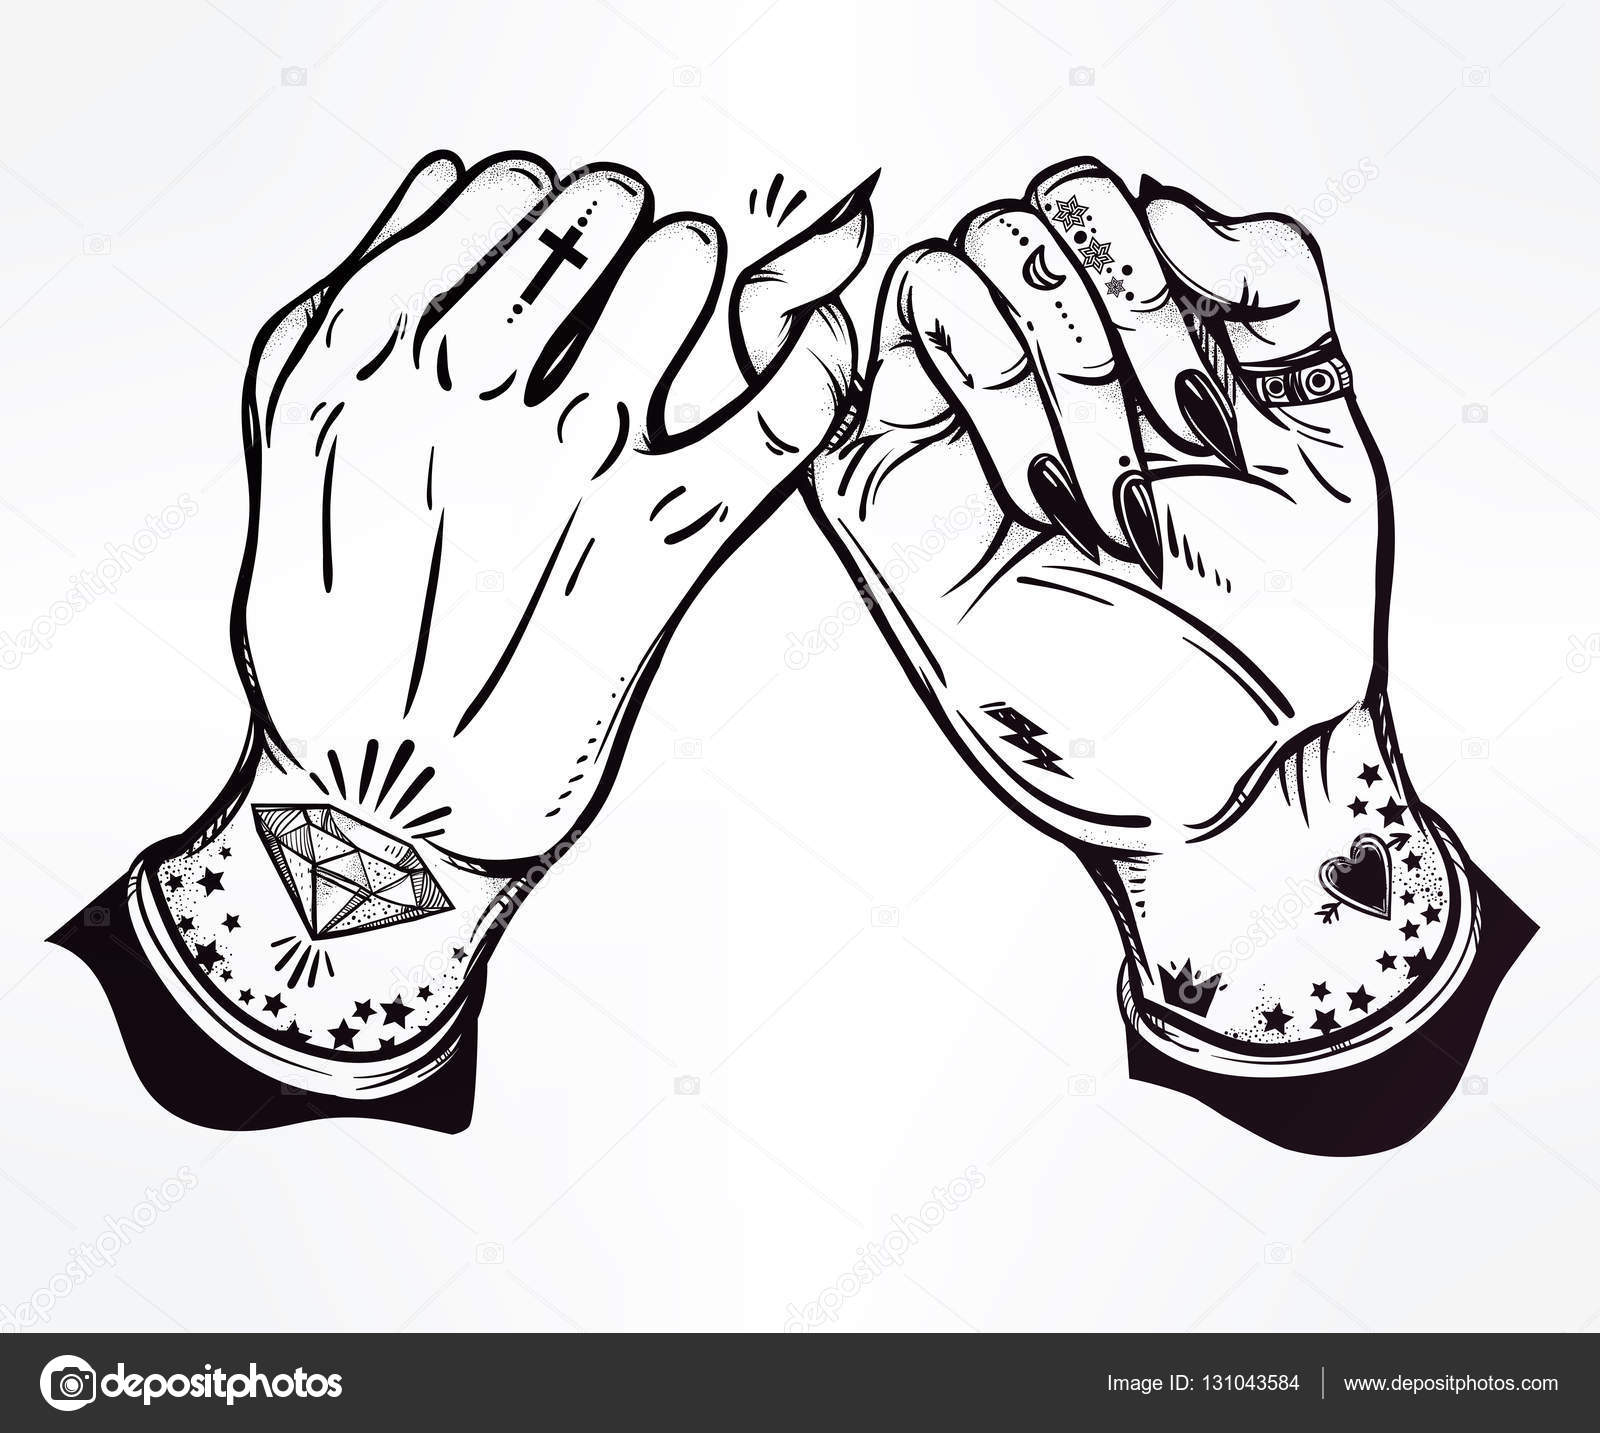 Pinky promettono tenere la mano Le mani sono tatuate Ghetto e gotico stile ispirato Illustrazione vettoriale isolato Disegno del tatuaggio simbolo di